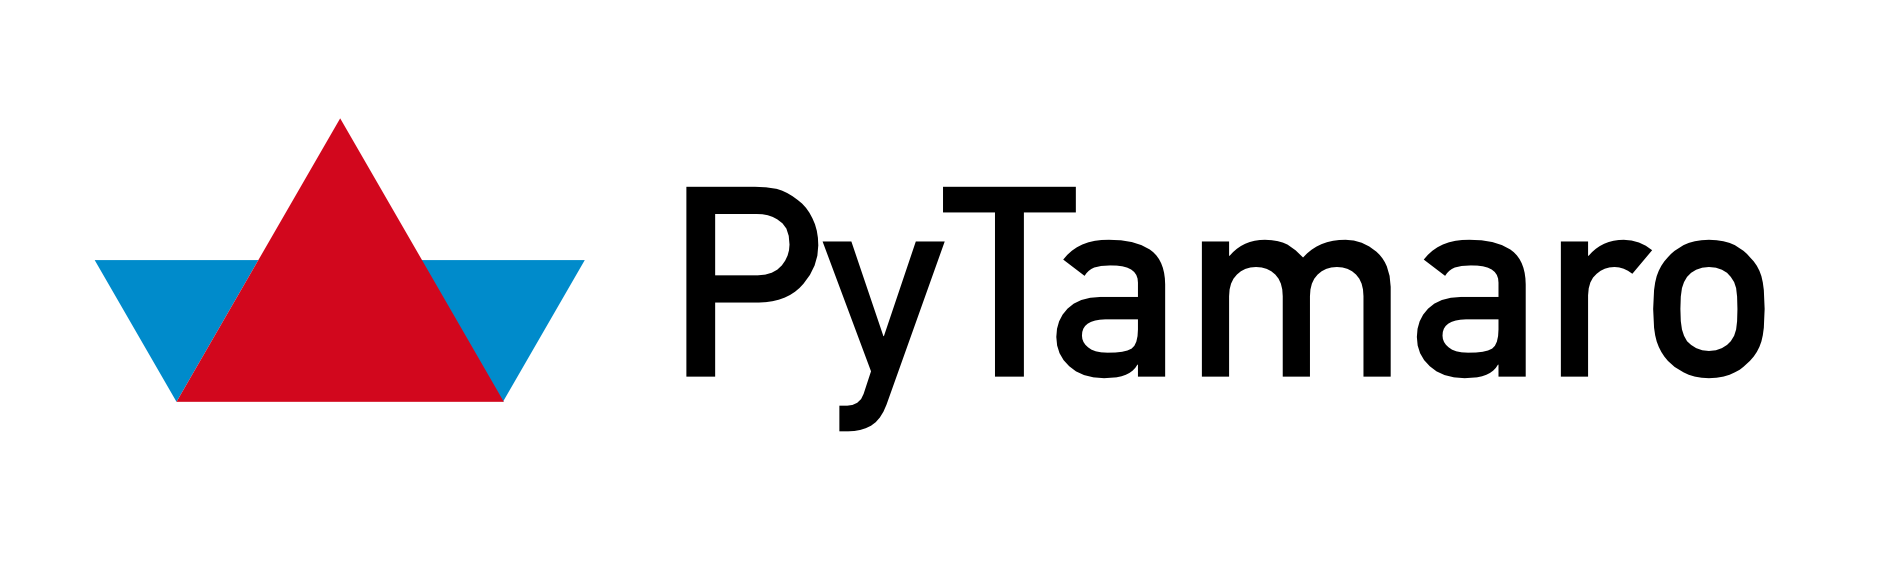 PyTamaro logo